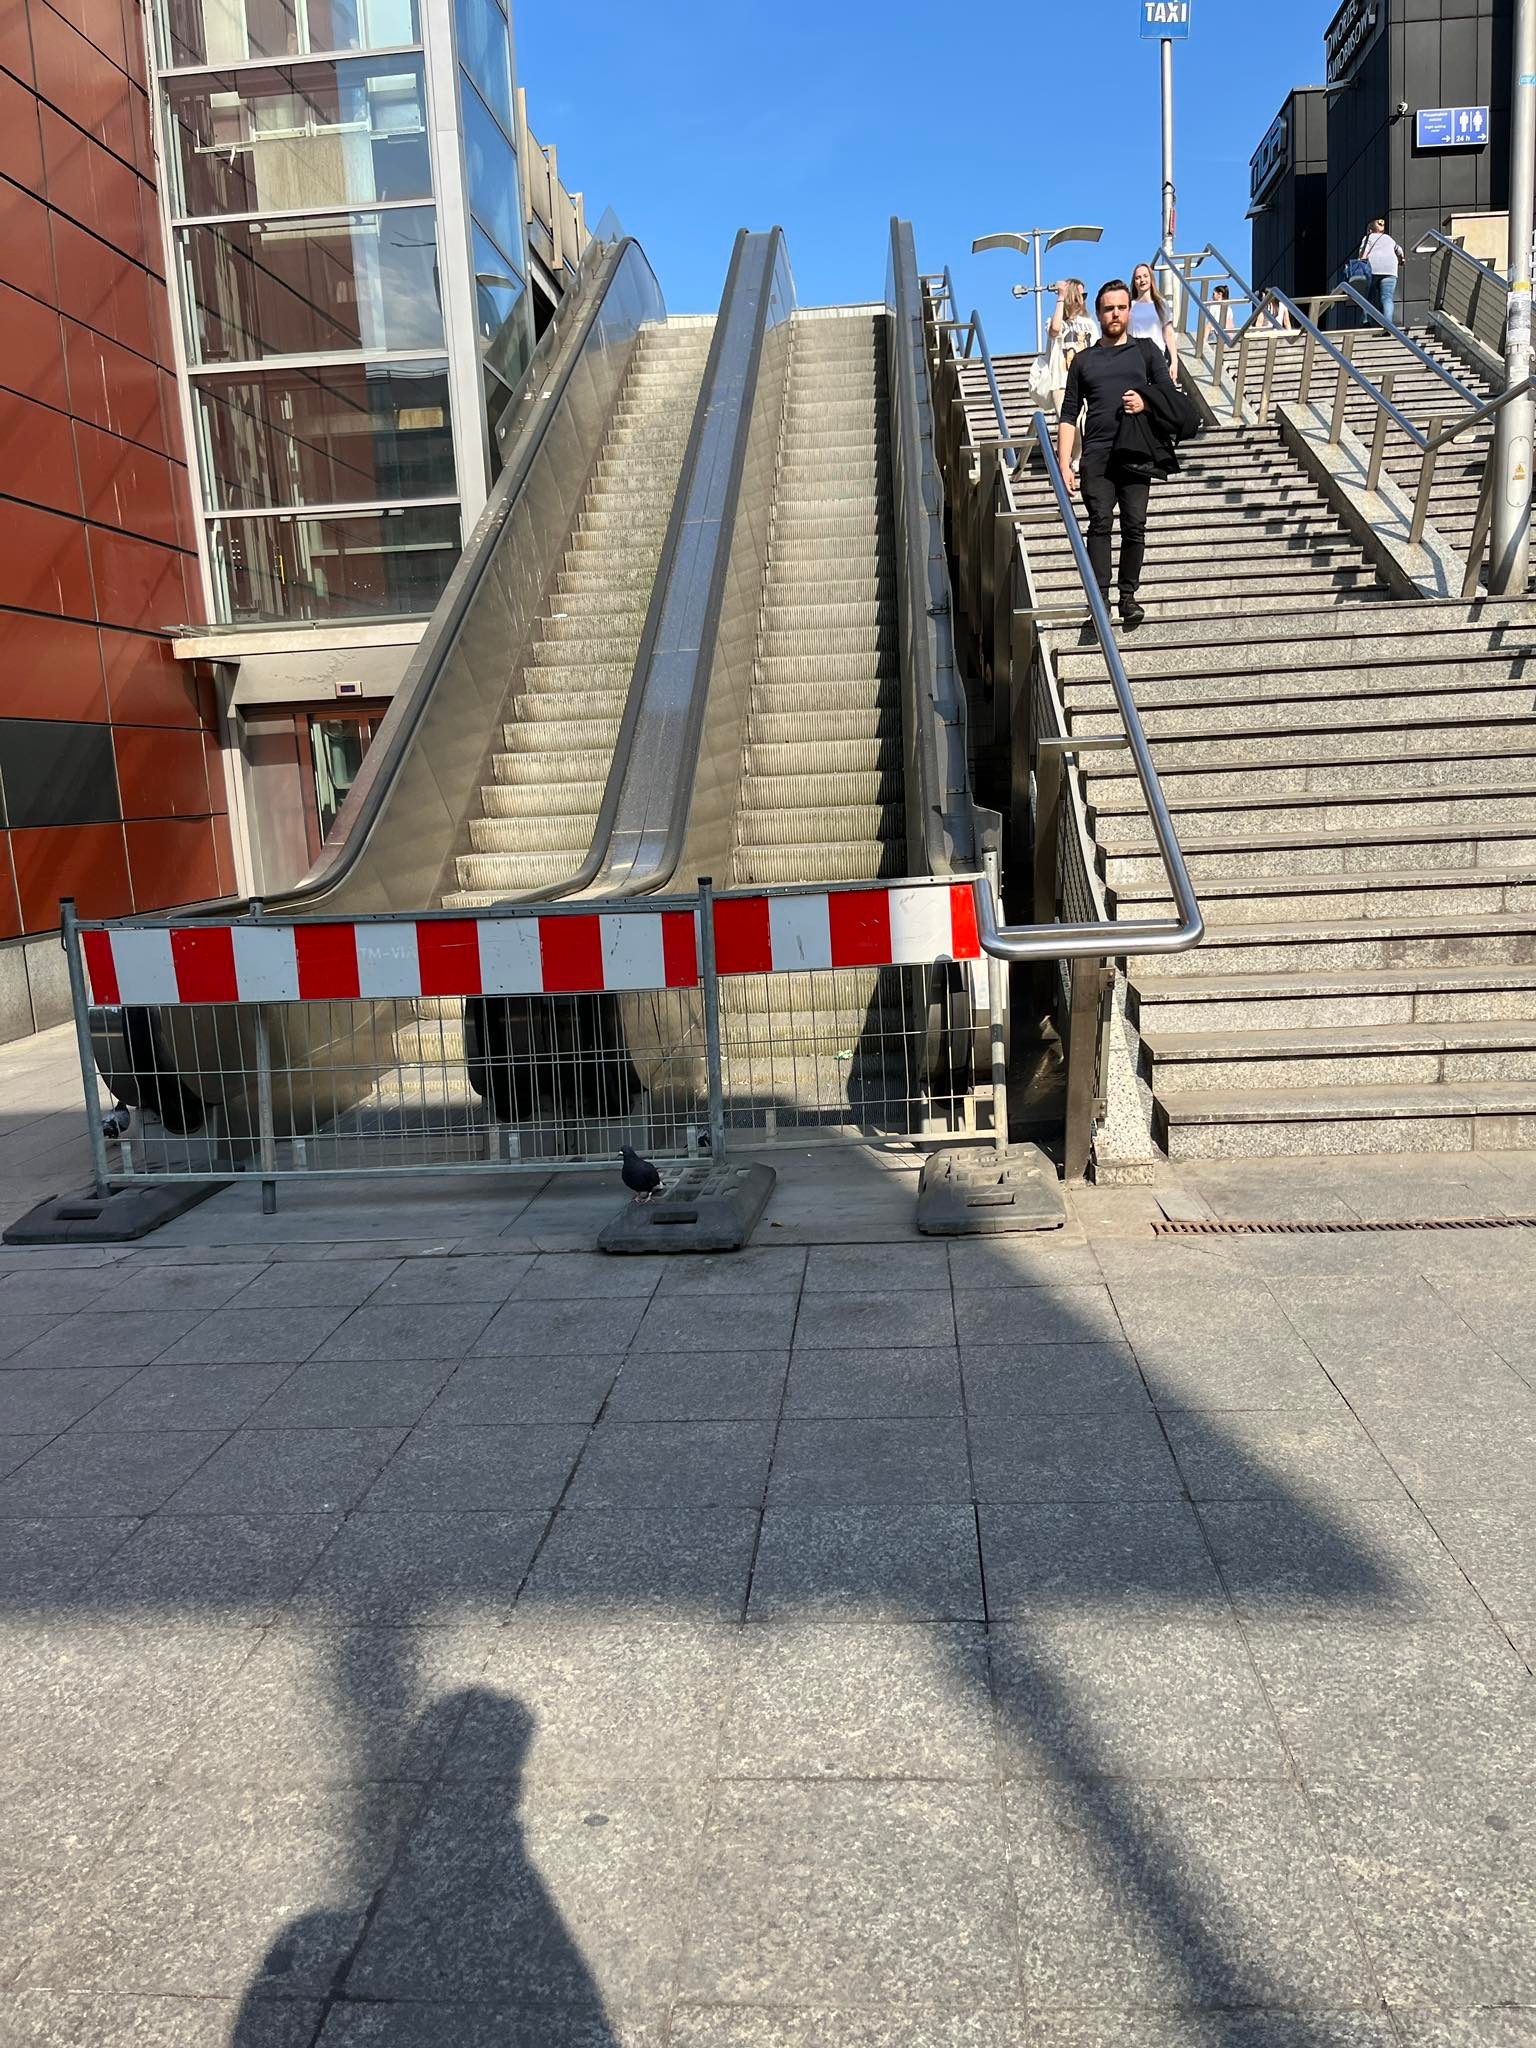 Nieruchome schody w Krakowie